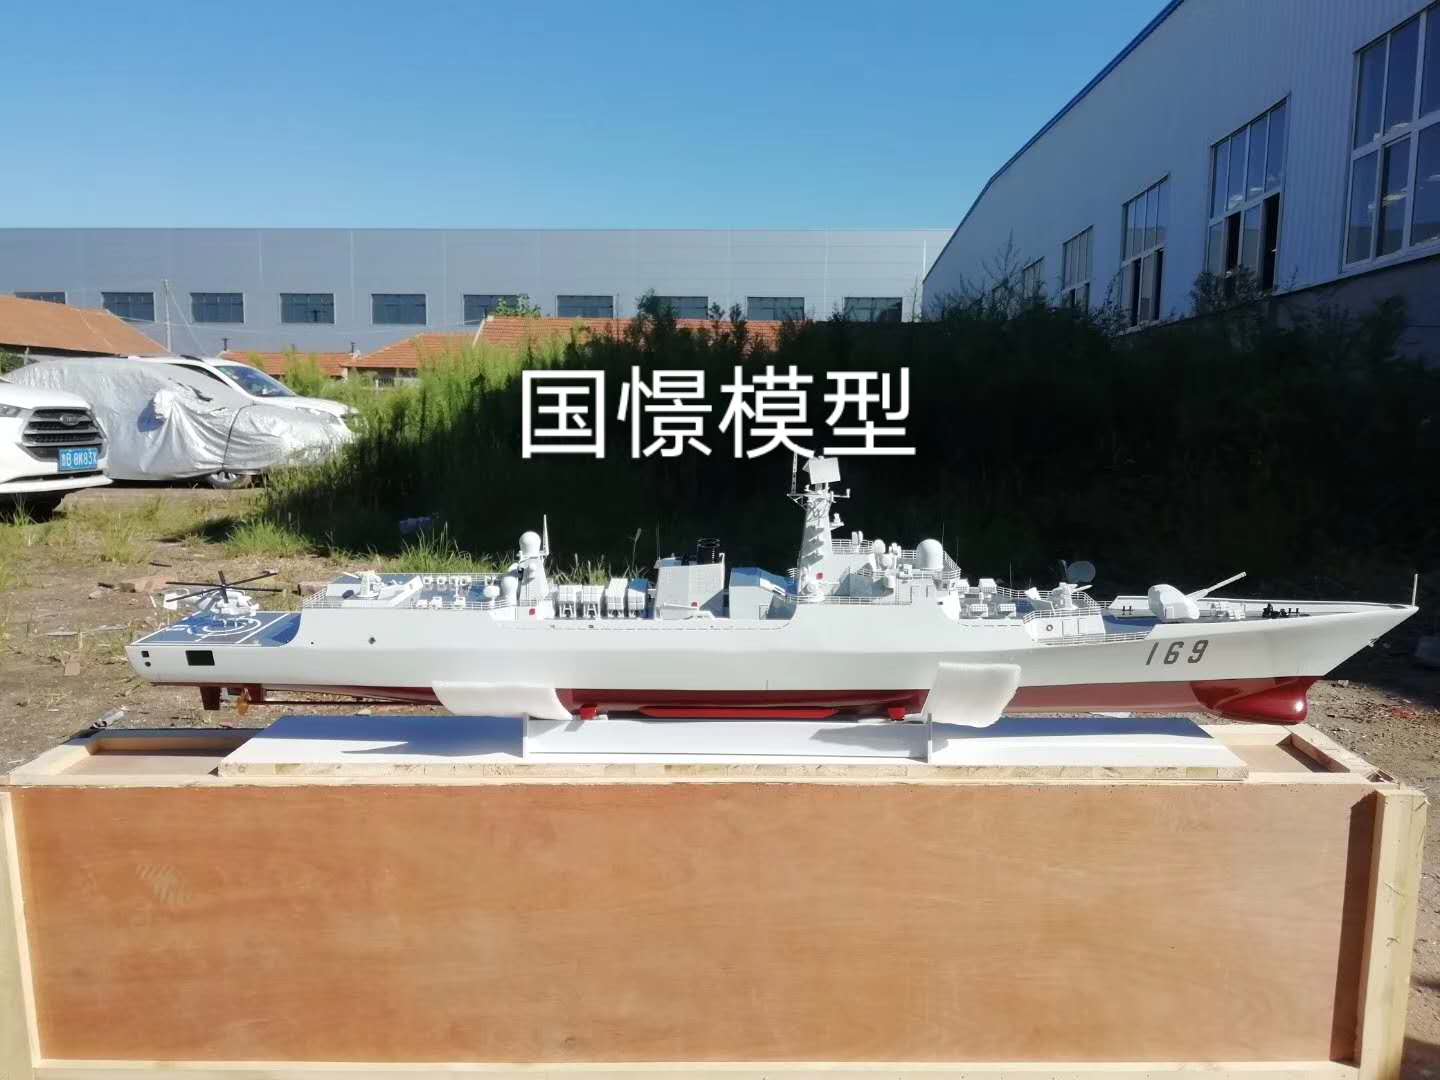 壤塘县船舶模型